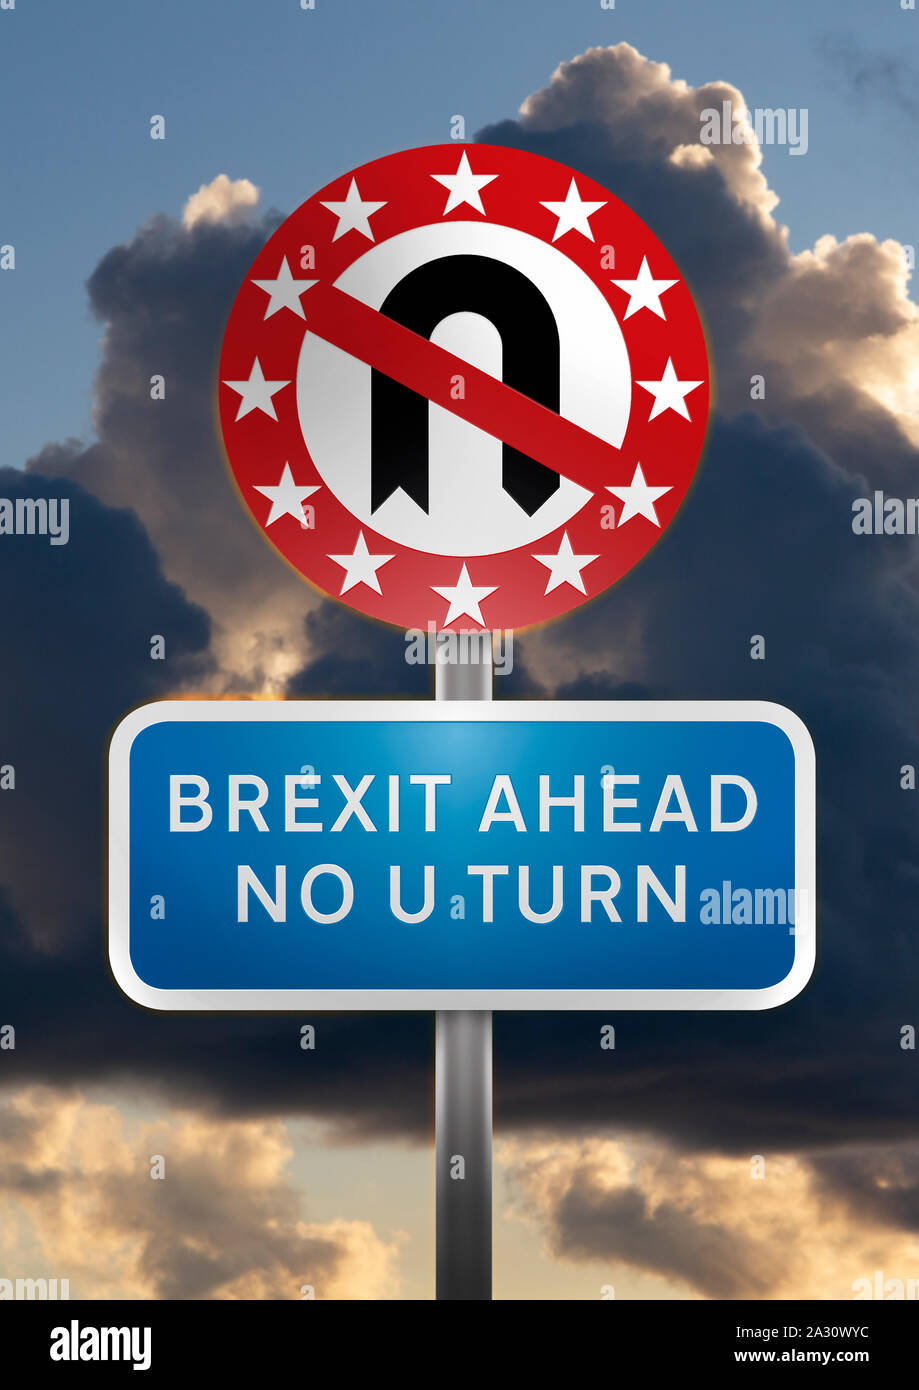 Un panneau routier avec un demi-tour pas de symbole dans un cercle de douze étoiles d'or contre la colère du ciel avec les mots 'Brexit Aead No U Turn' Banque D'Images